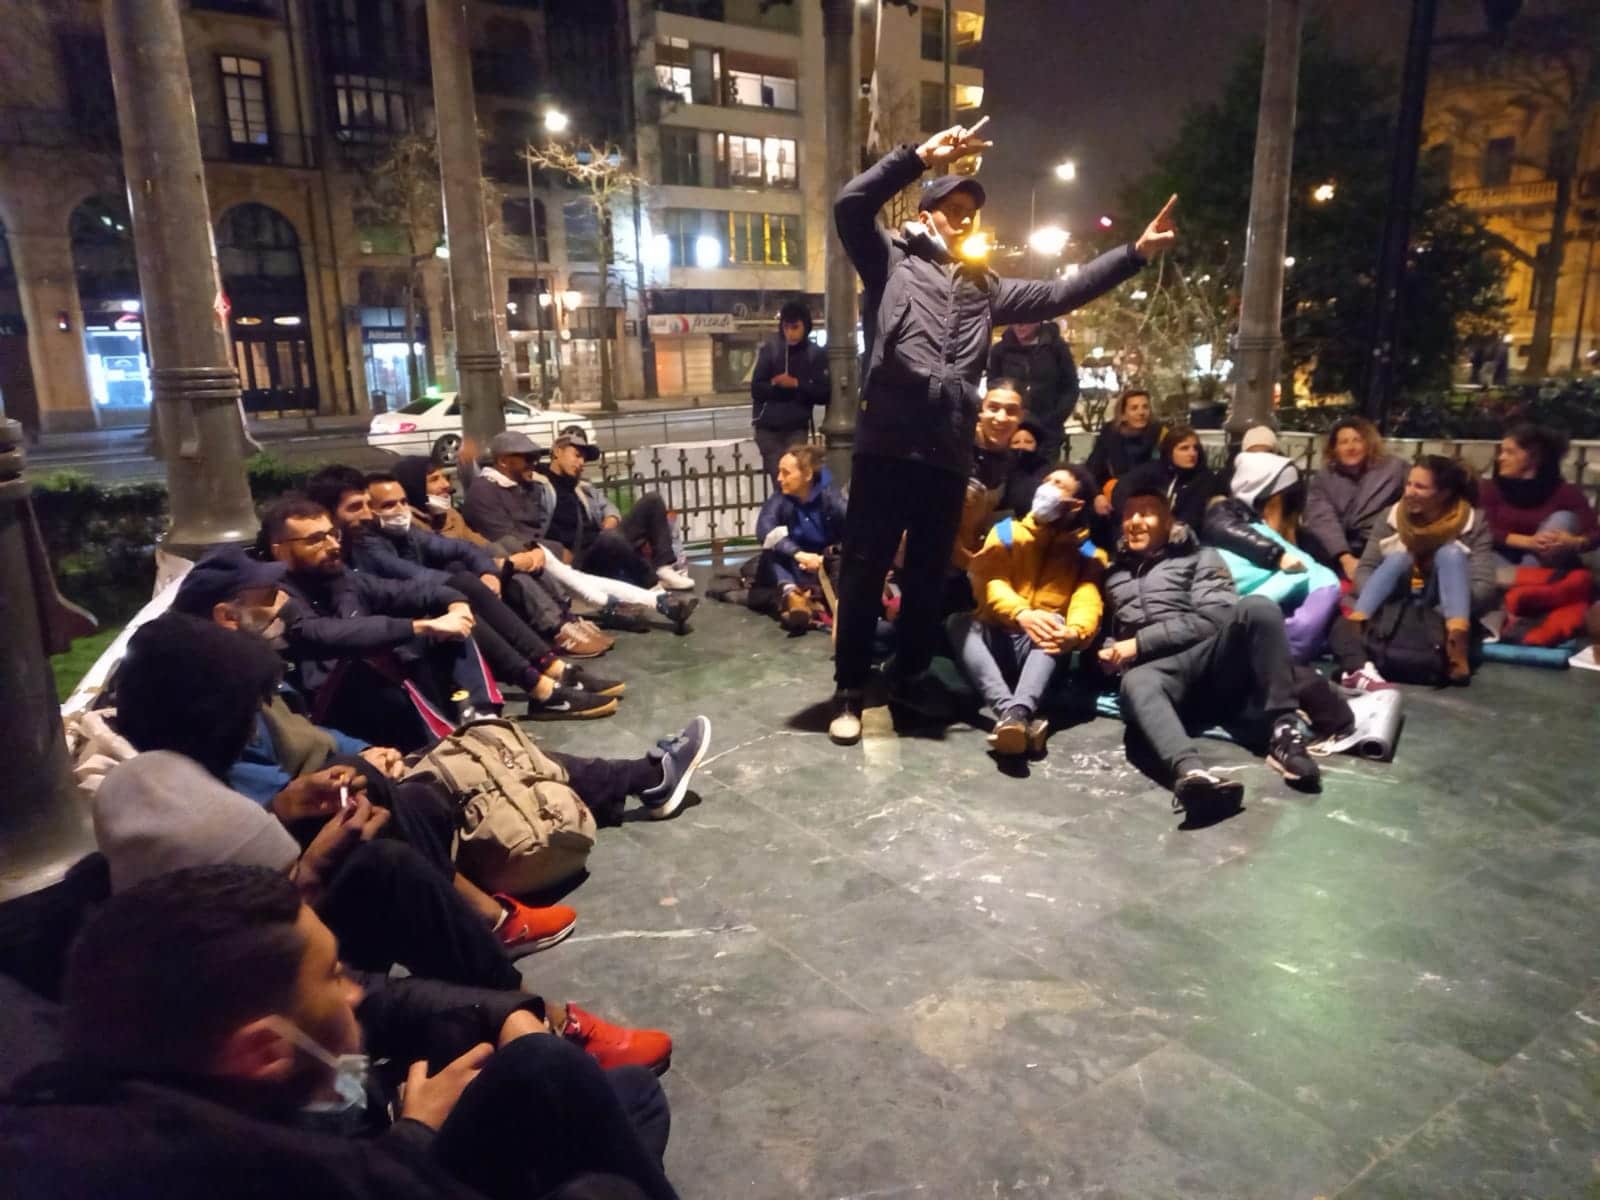 kiosko2 - Noche de jueves reivindicativa y a la intemperie para 80 personas en Donostia